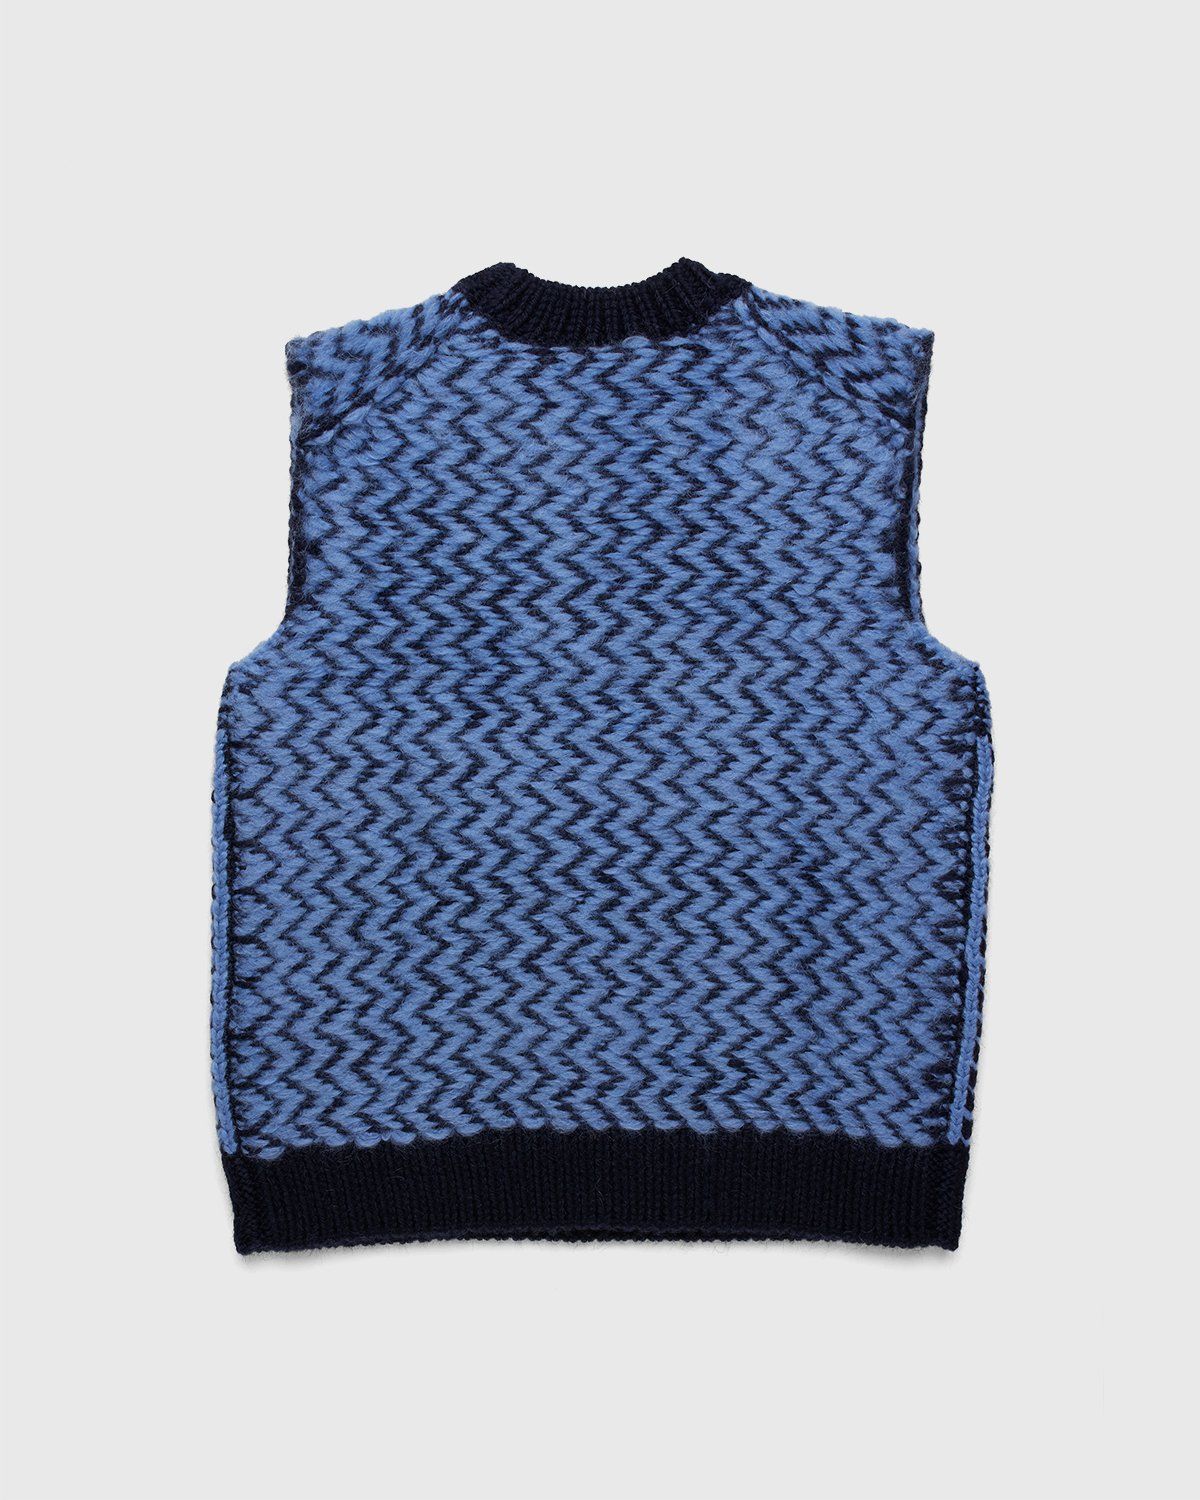 Jil Sander – Vest Knitted Blue